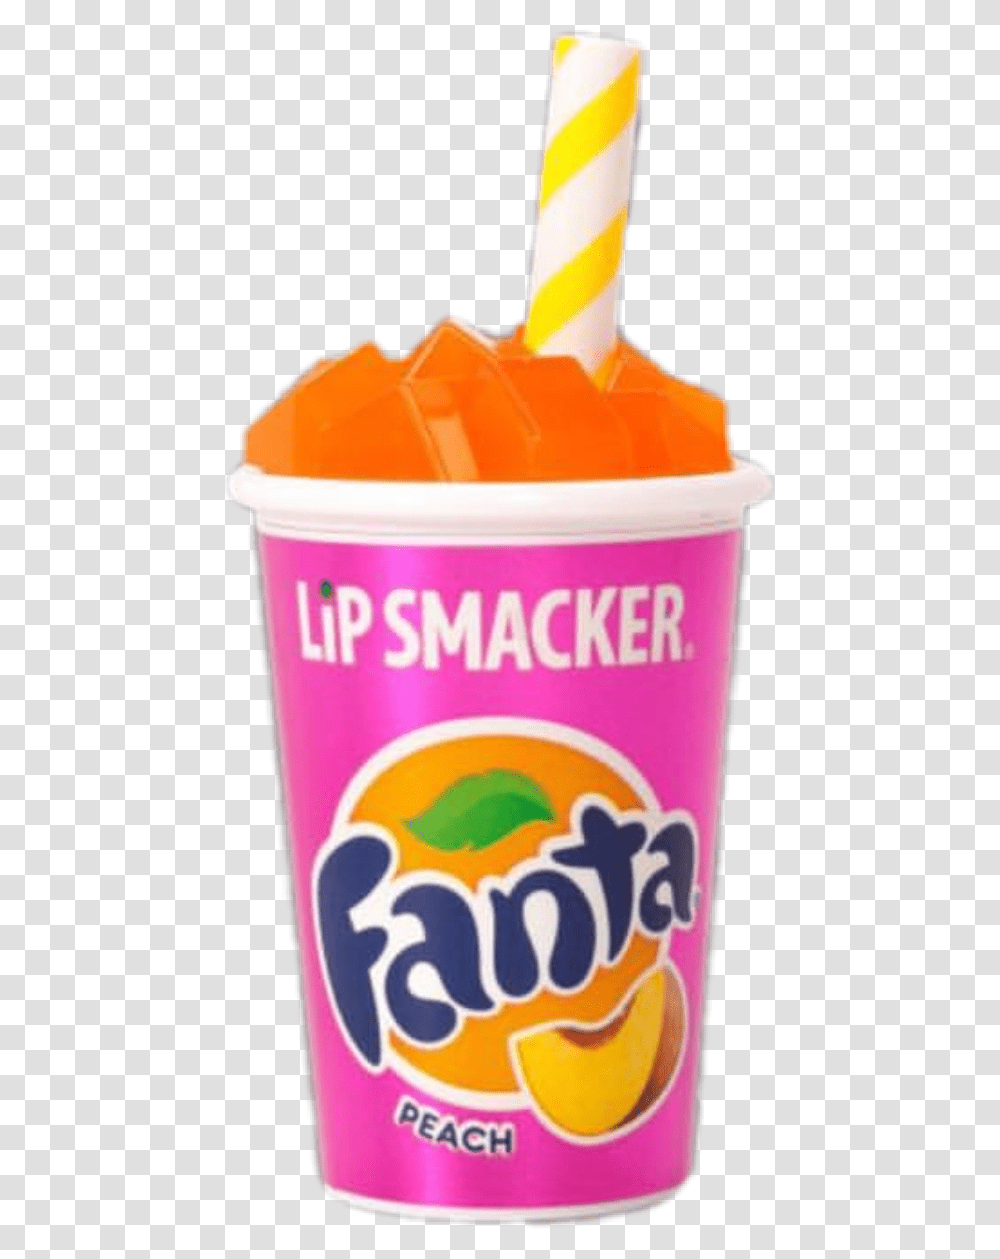 Lipsmacker Fanta Pngs Filler Orange Fanta, Dessert, Food, Cream, Creme Transparent Png